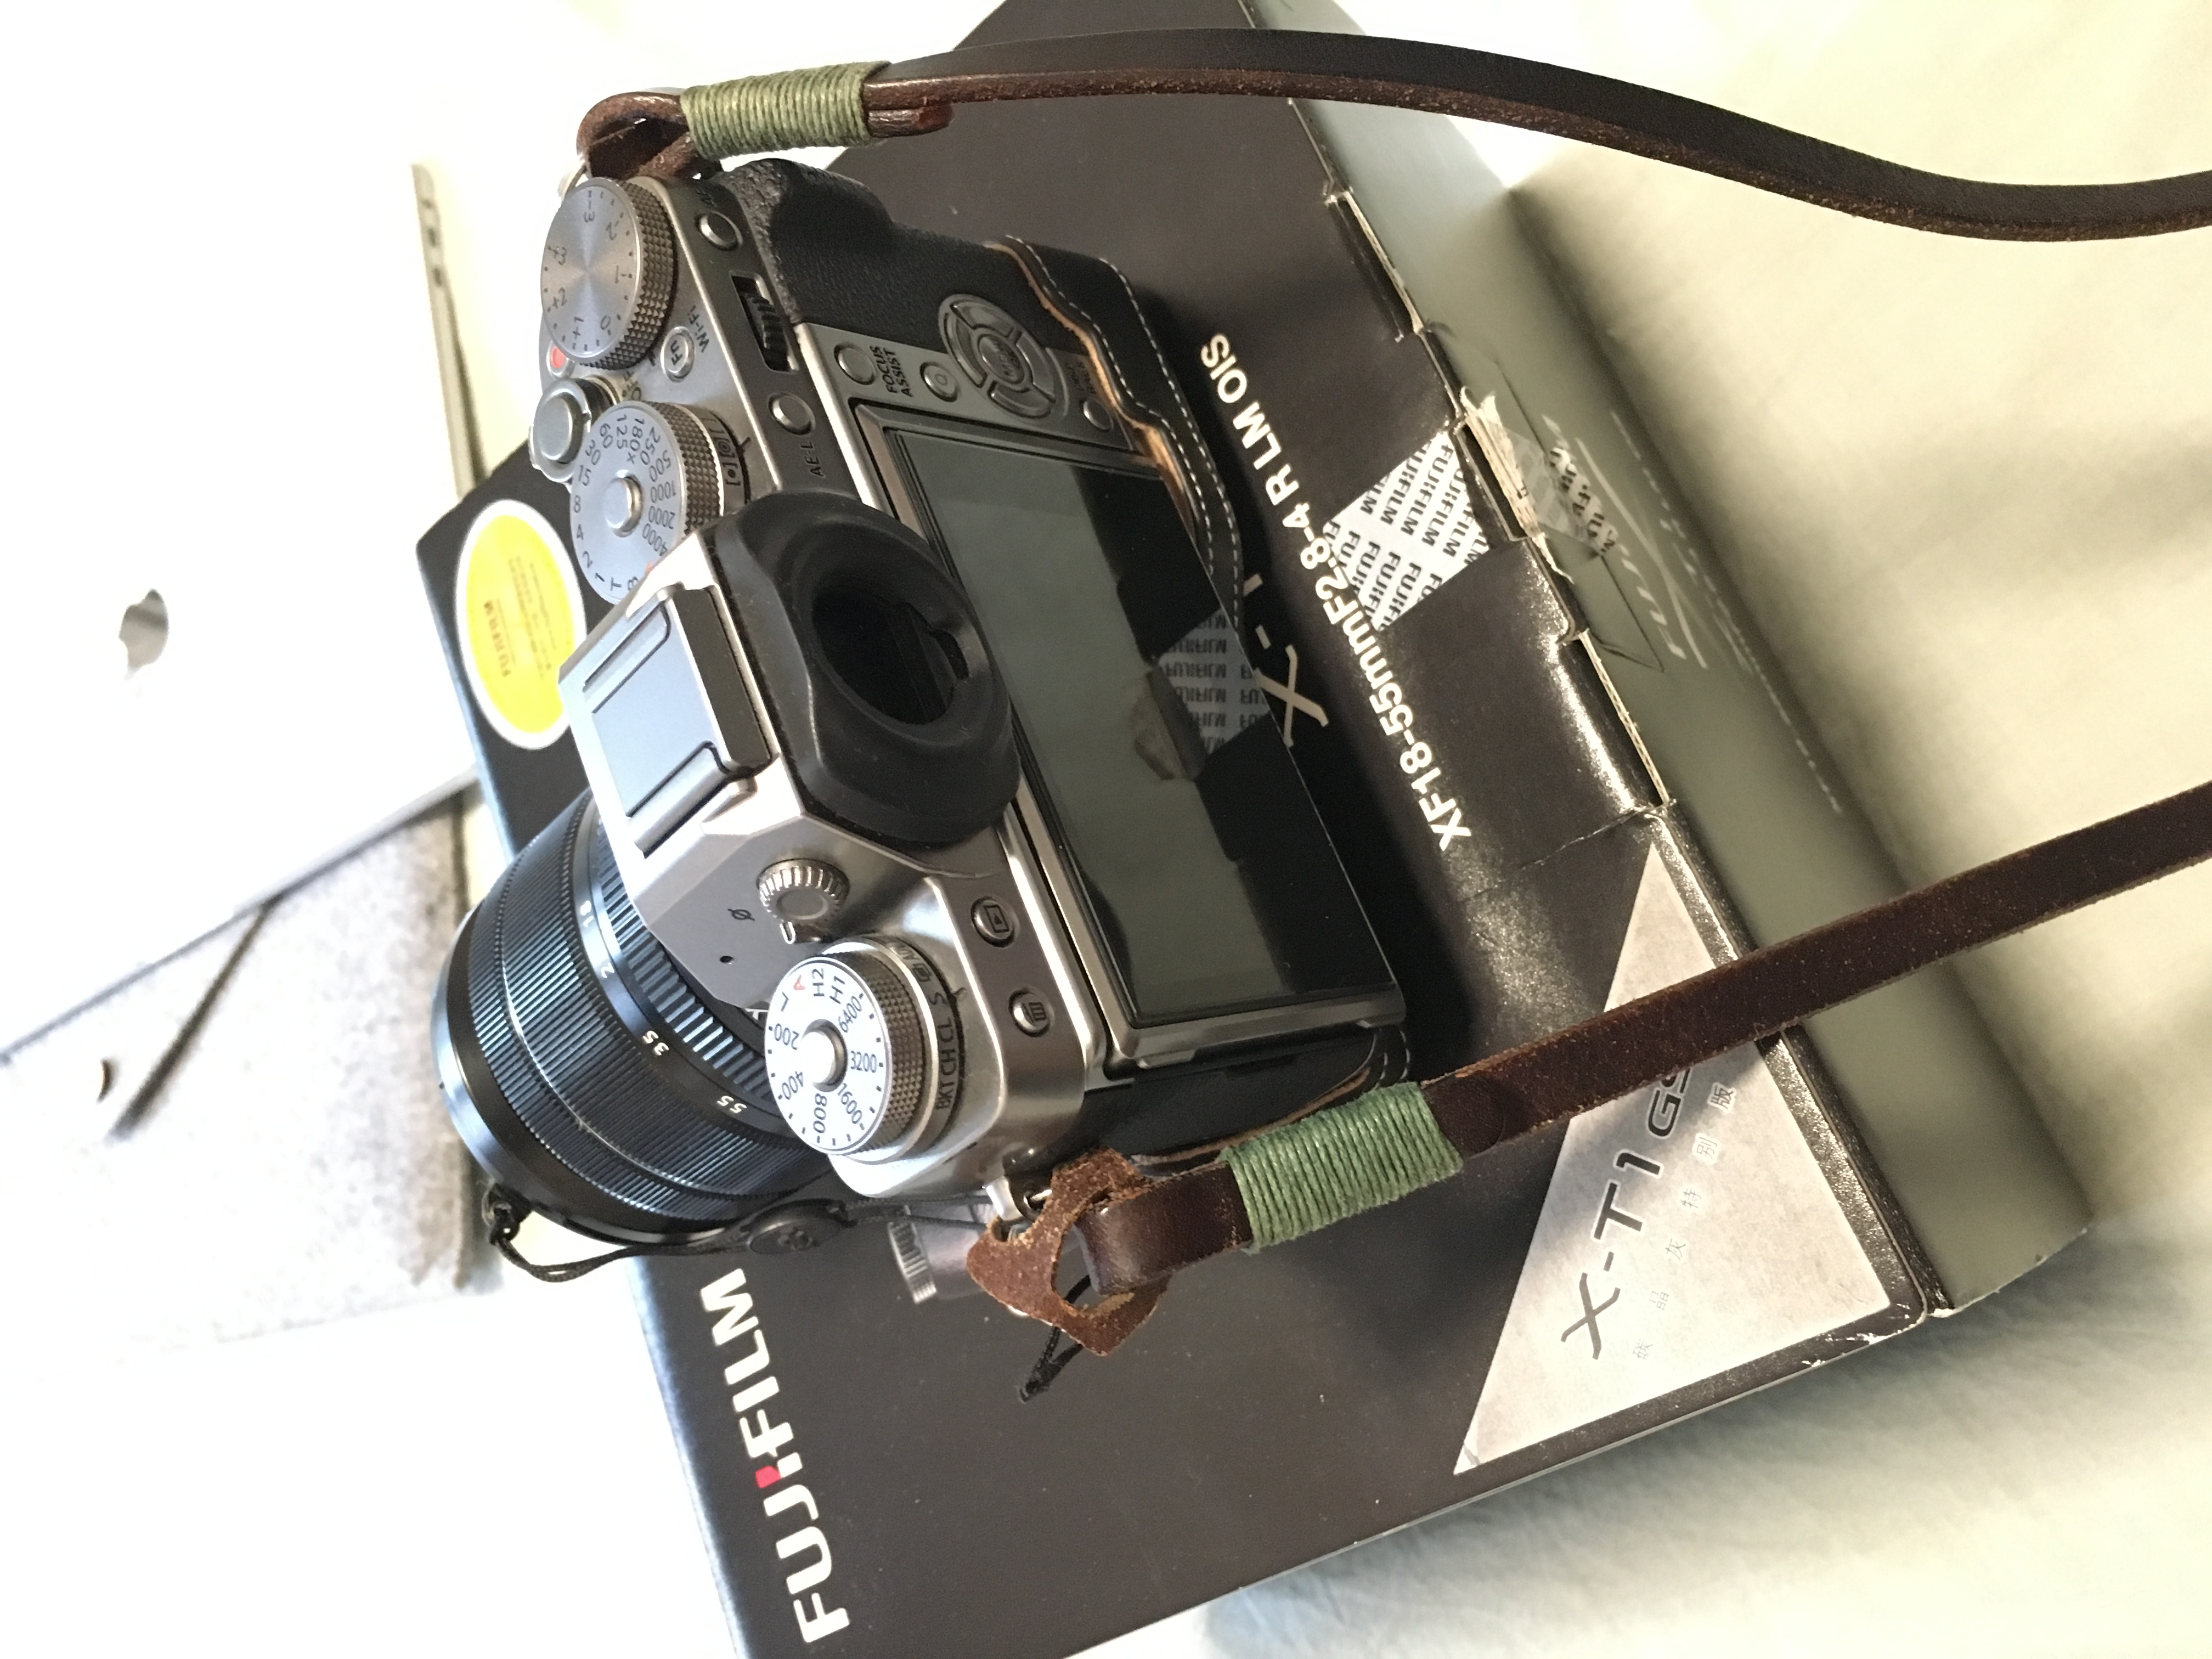 富士 X-T1微单相机 套机 (XF18-55mm 标准变焦镜头) (碳晶灰色)